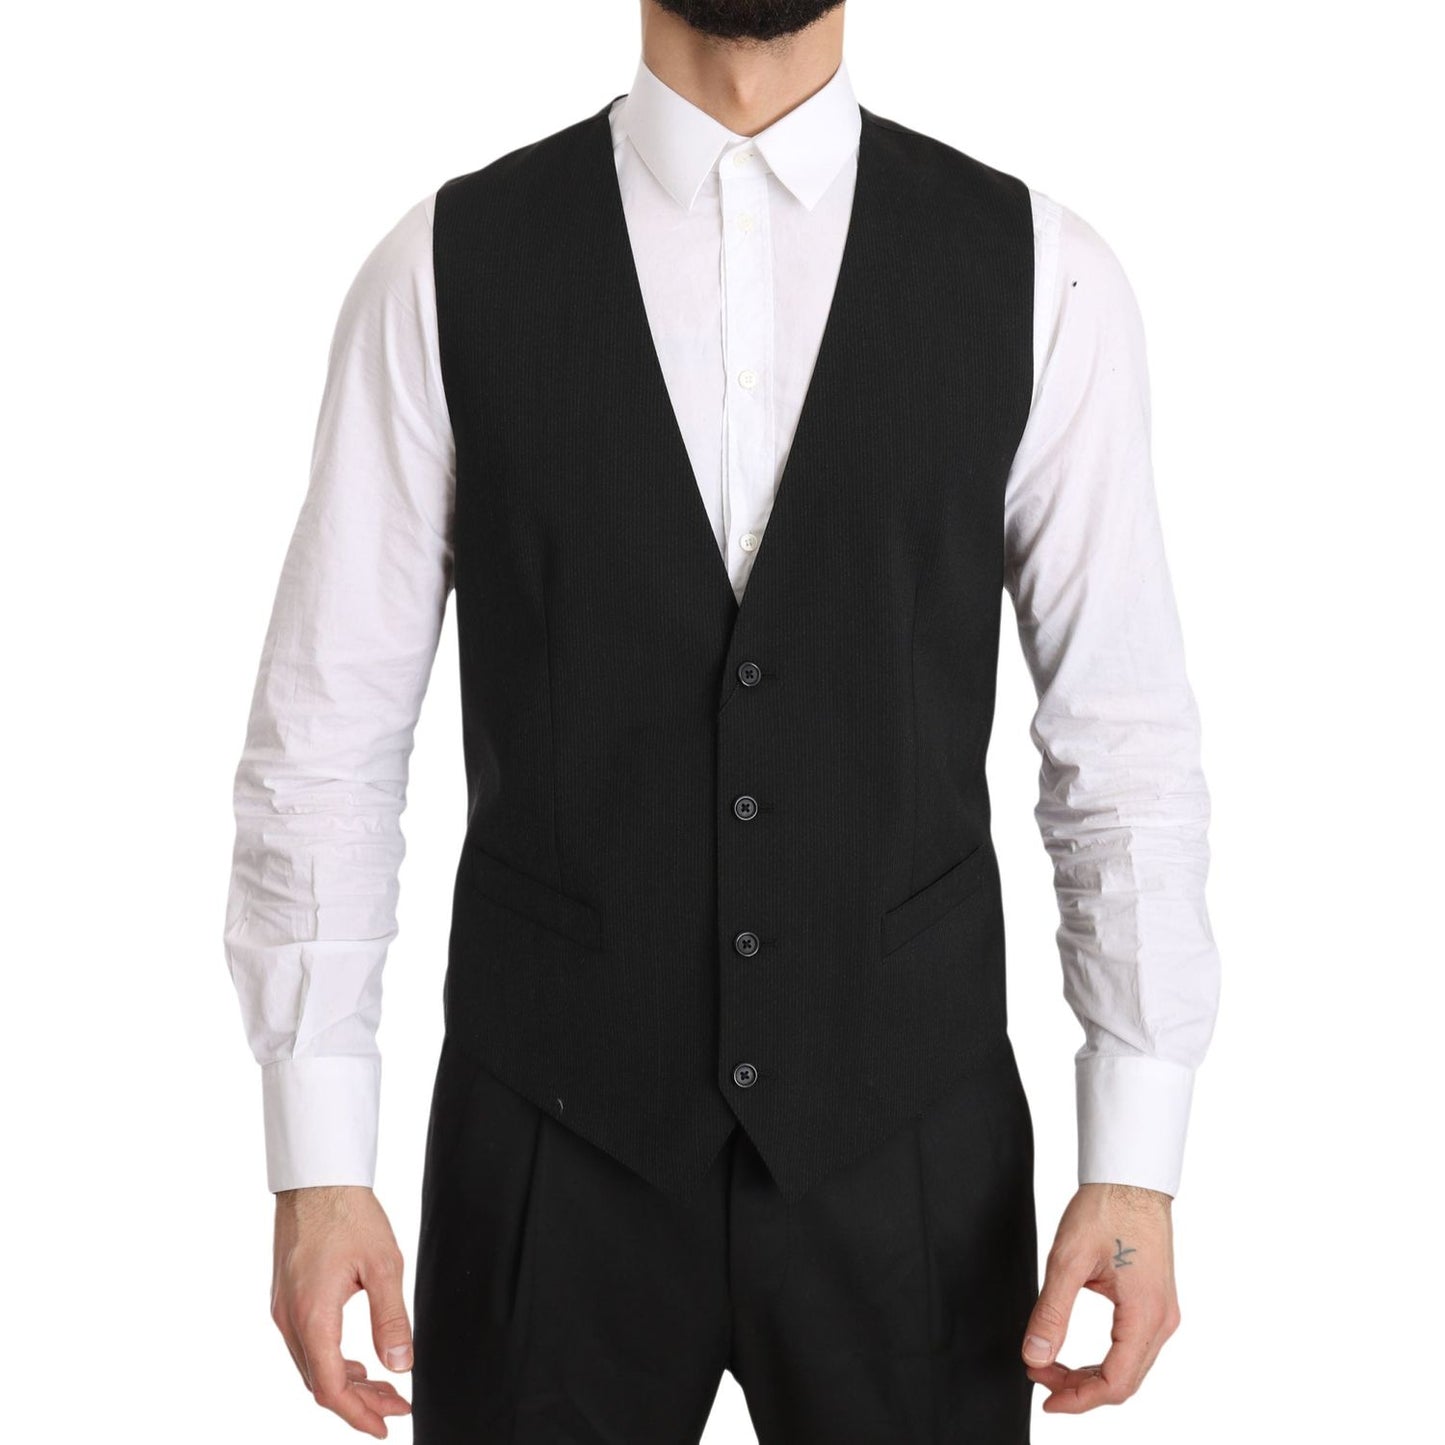 Dolce & Gabbana Elegant Gray Formal Vest - Regular Fit gray-gilet-staff-regular-fit-formal-vest IMG_1778-scaled.jpg